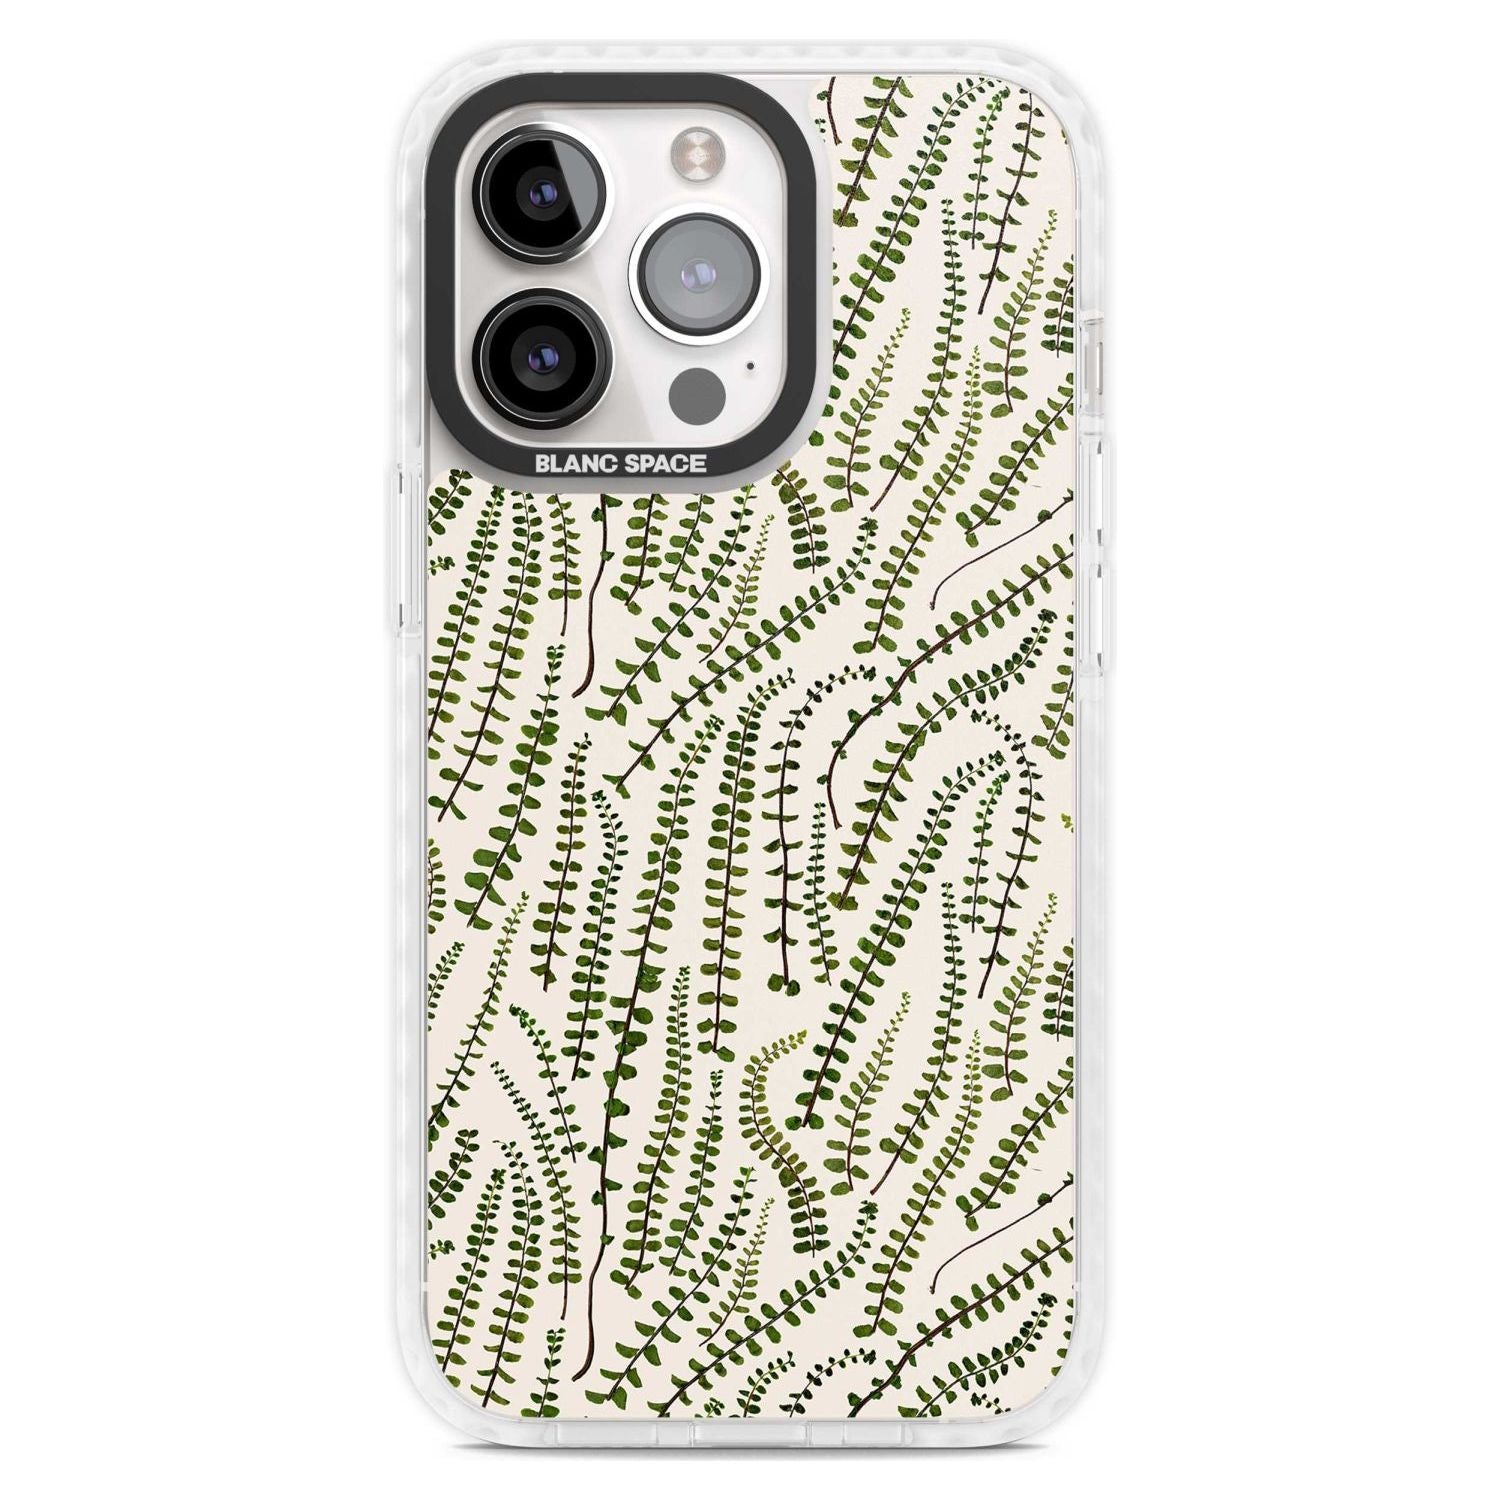 Fern Leaf Pattern Design - Cream Phone Case iPhone 15 Pro Max / Magsafe Impact Case,iPhone 15 Pro / Magsafe Impact Case Blanc Space